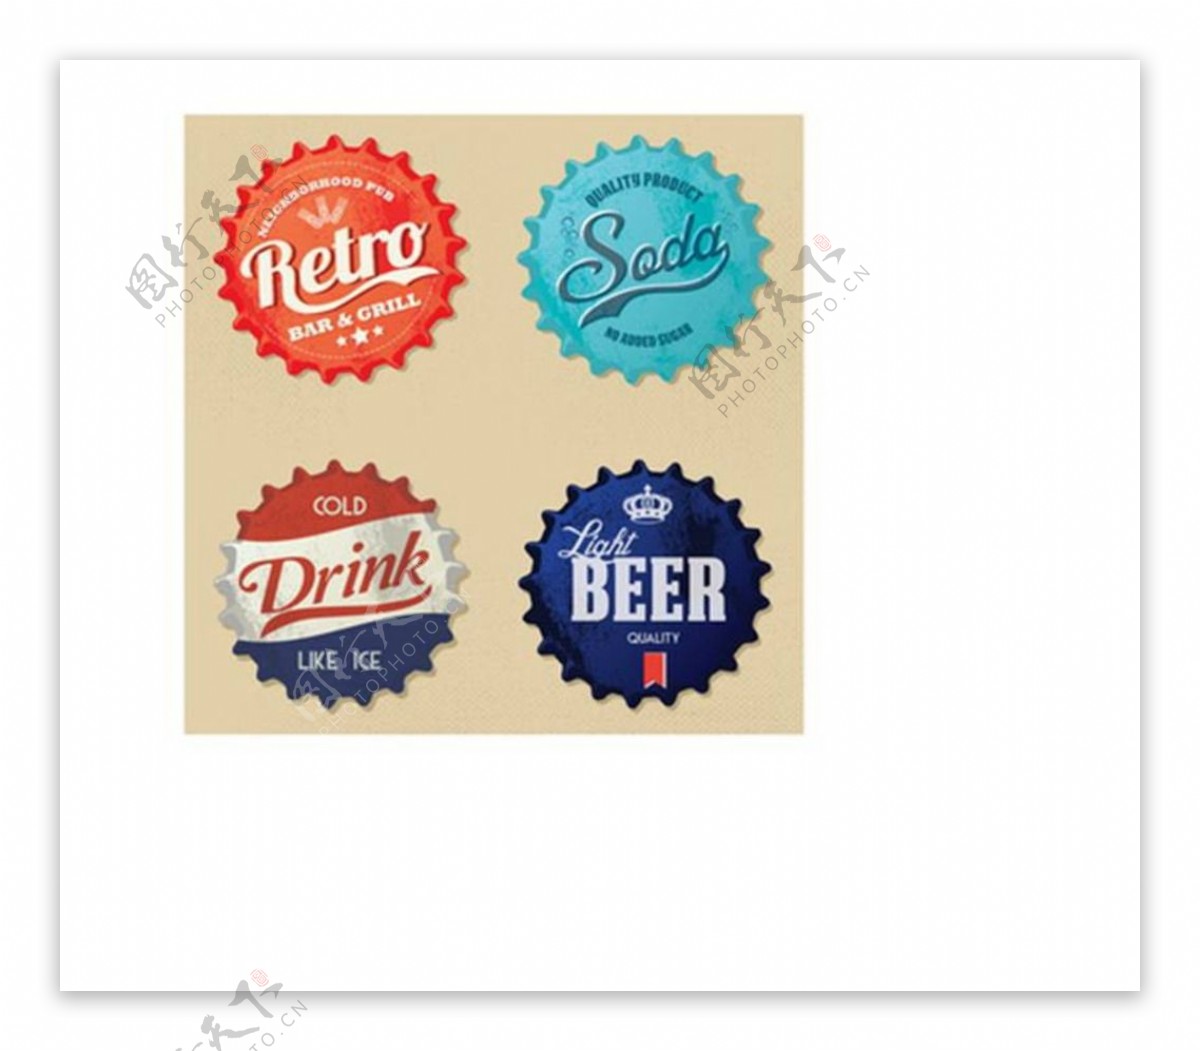 啤酒标签啤酒商标图片